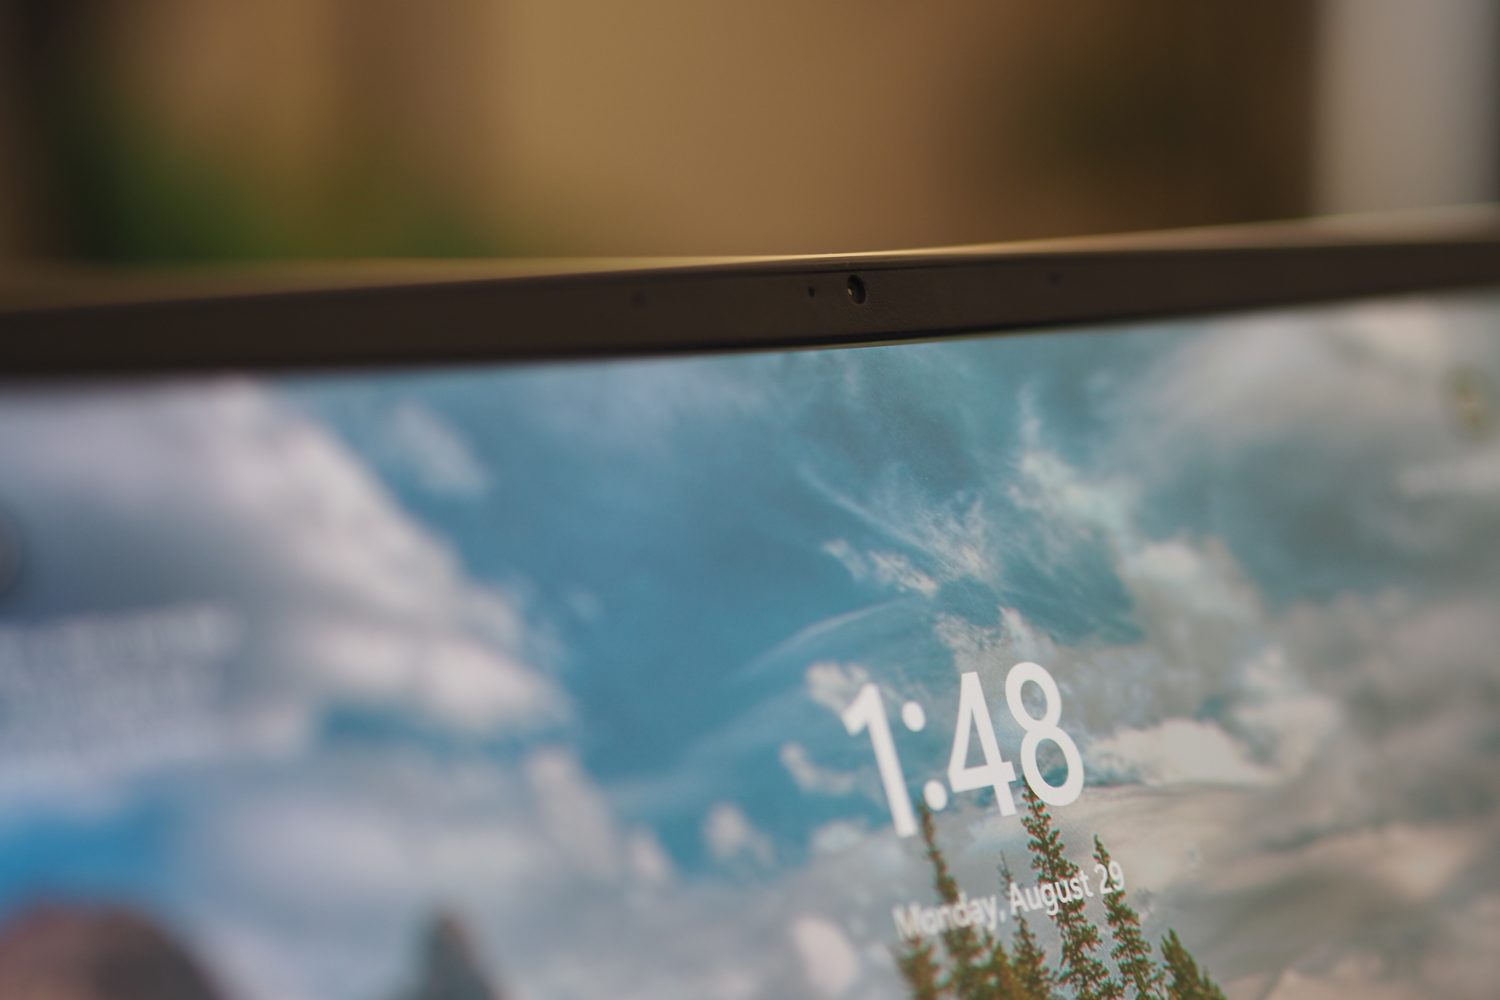 Vista frontal do Acer Swift 3 OLED mostrando a webcam.